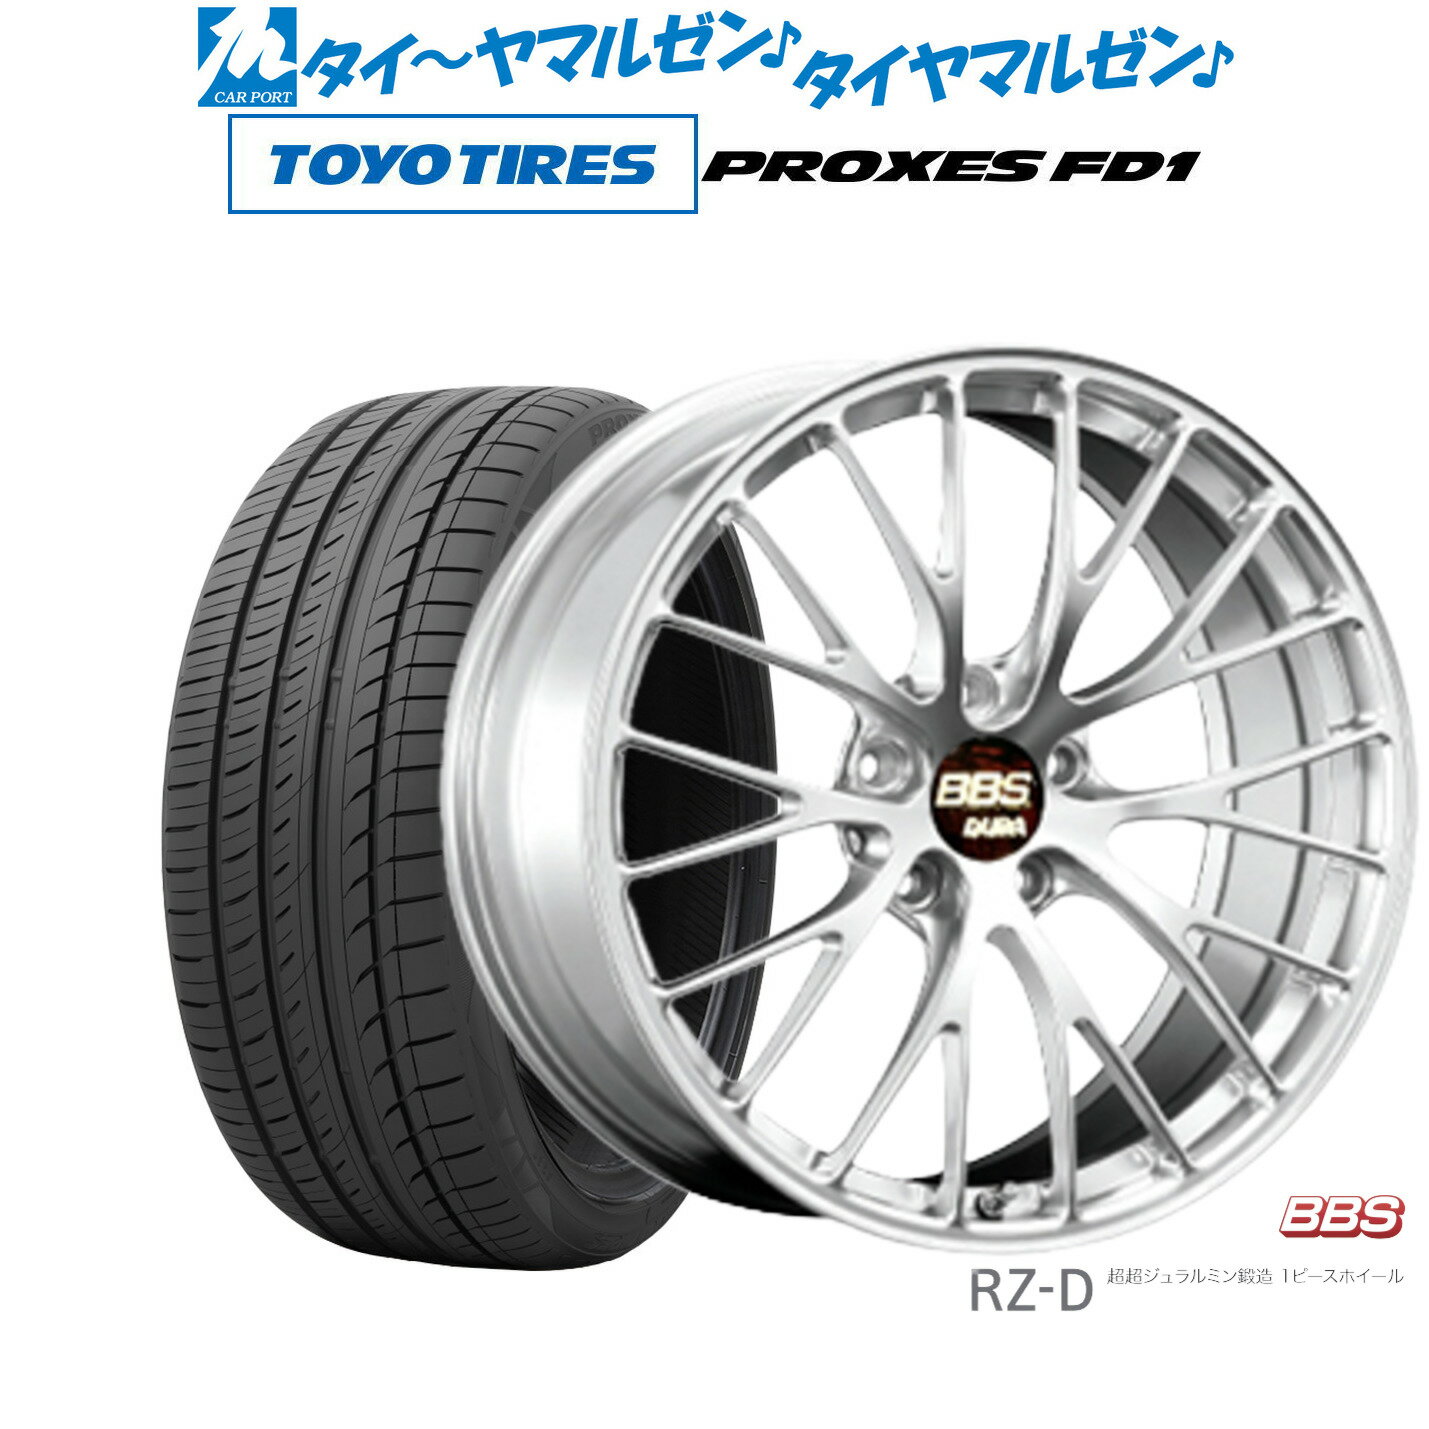 [5/20]割引クーポン配布新品 サマータイヤ ホイール4本セットBBS JAPAN RZ-D20インチ 8.5Jトーヨータイヤ プロクセス PROXES FD1 245/40R20